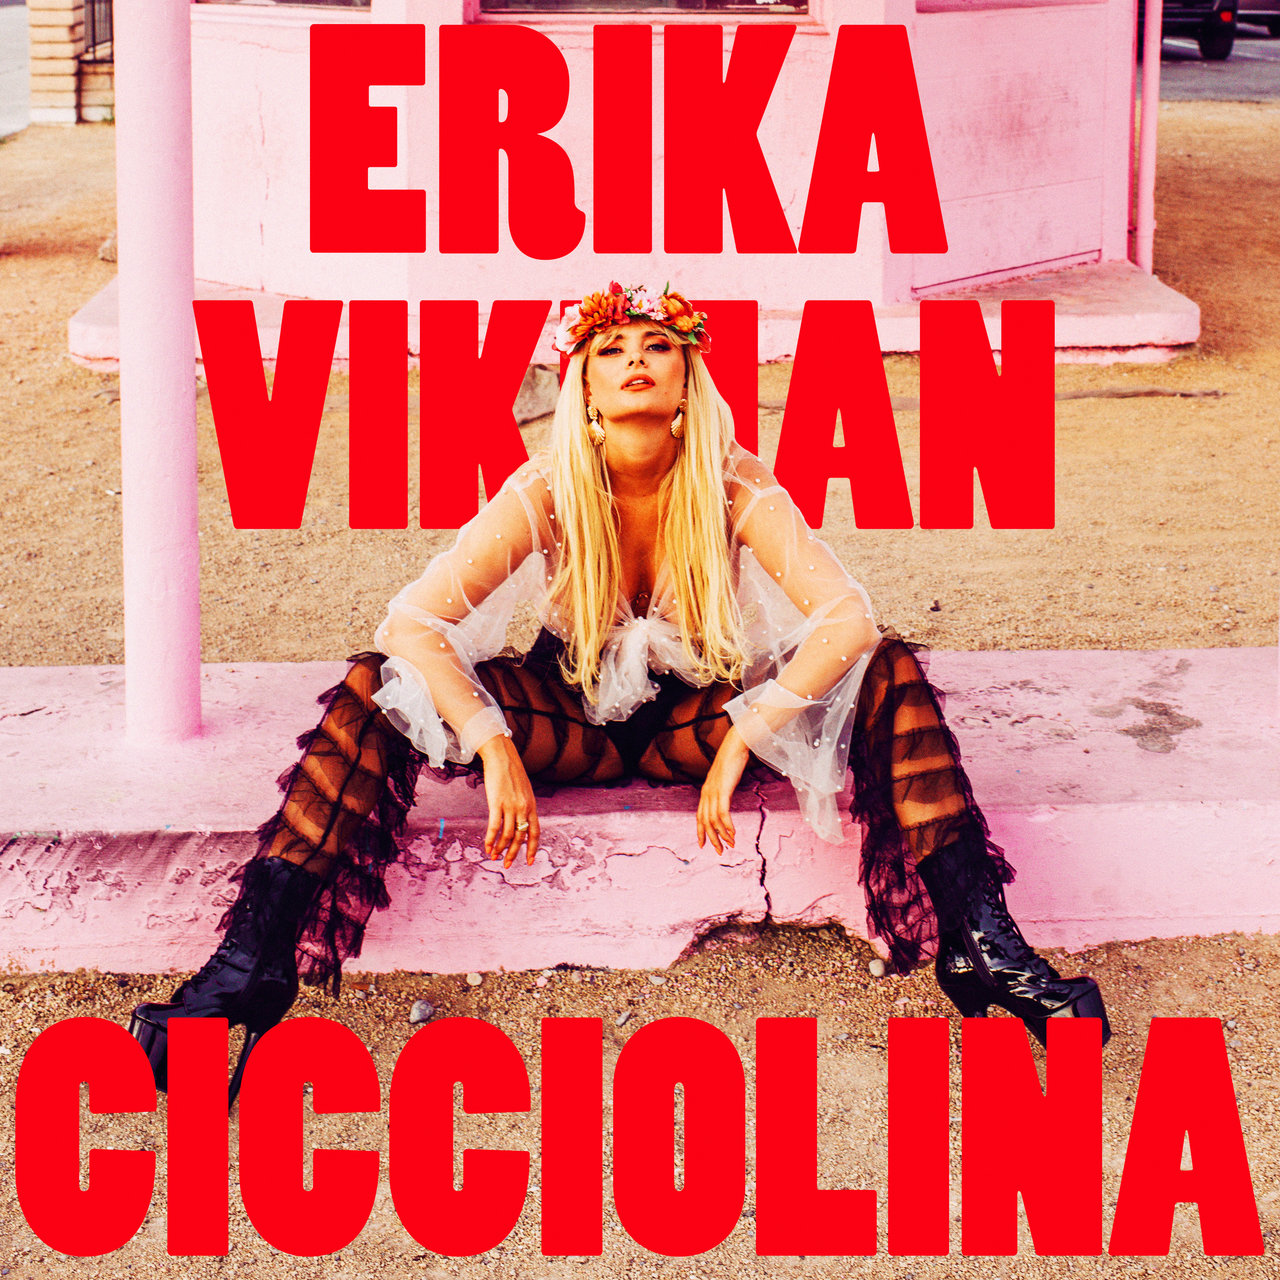 Erika Vikman Cicciolina cover artwork